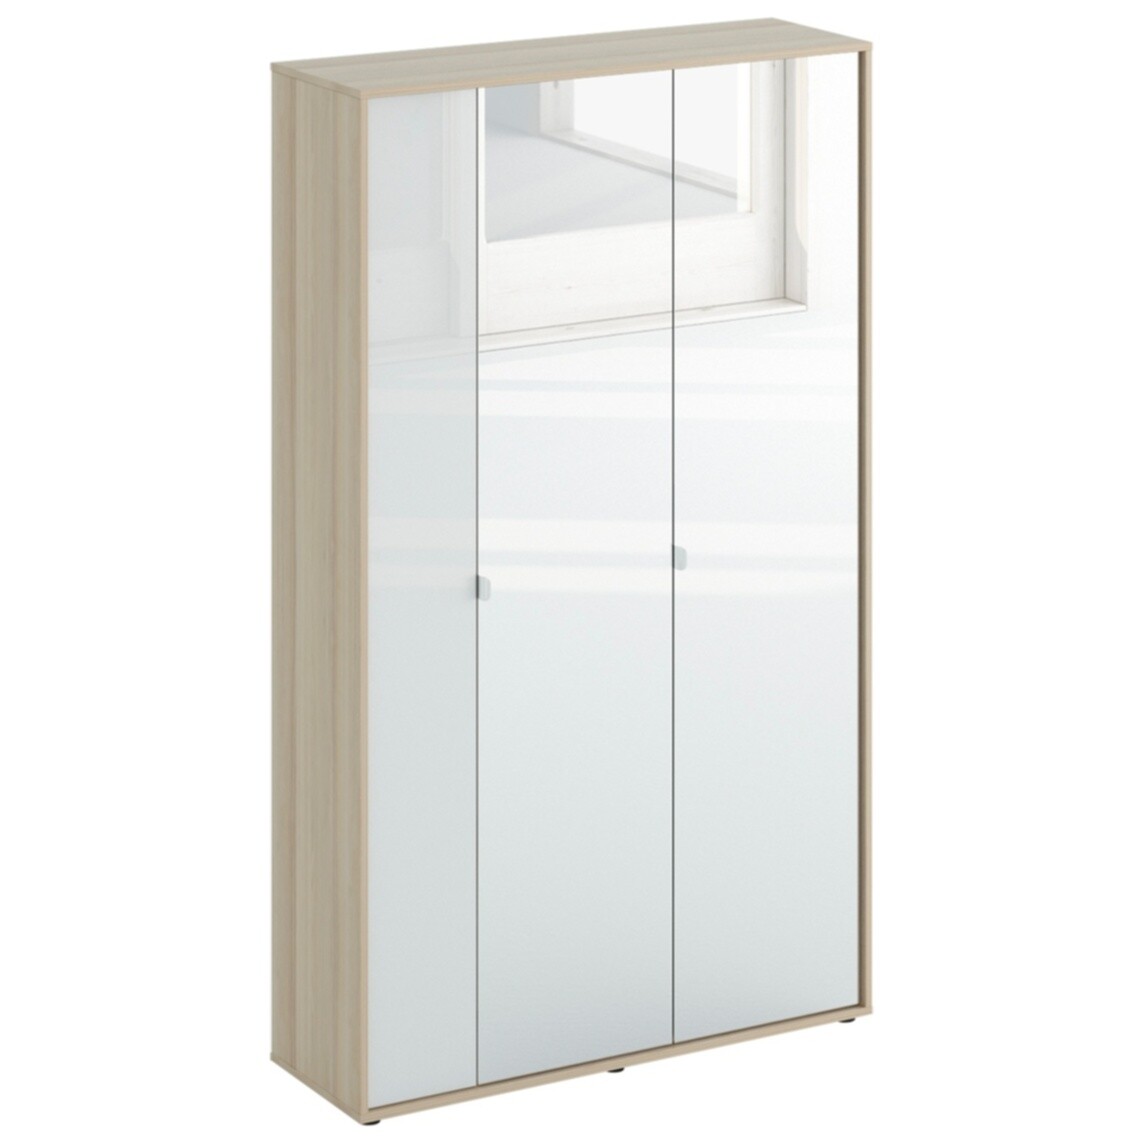 Шкаф распашной трехдверный 190х112 см зеркальный, стекло белое Latte